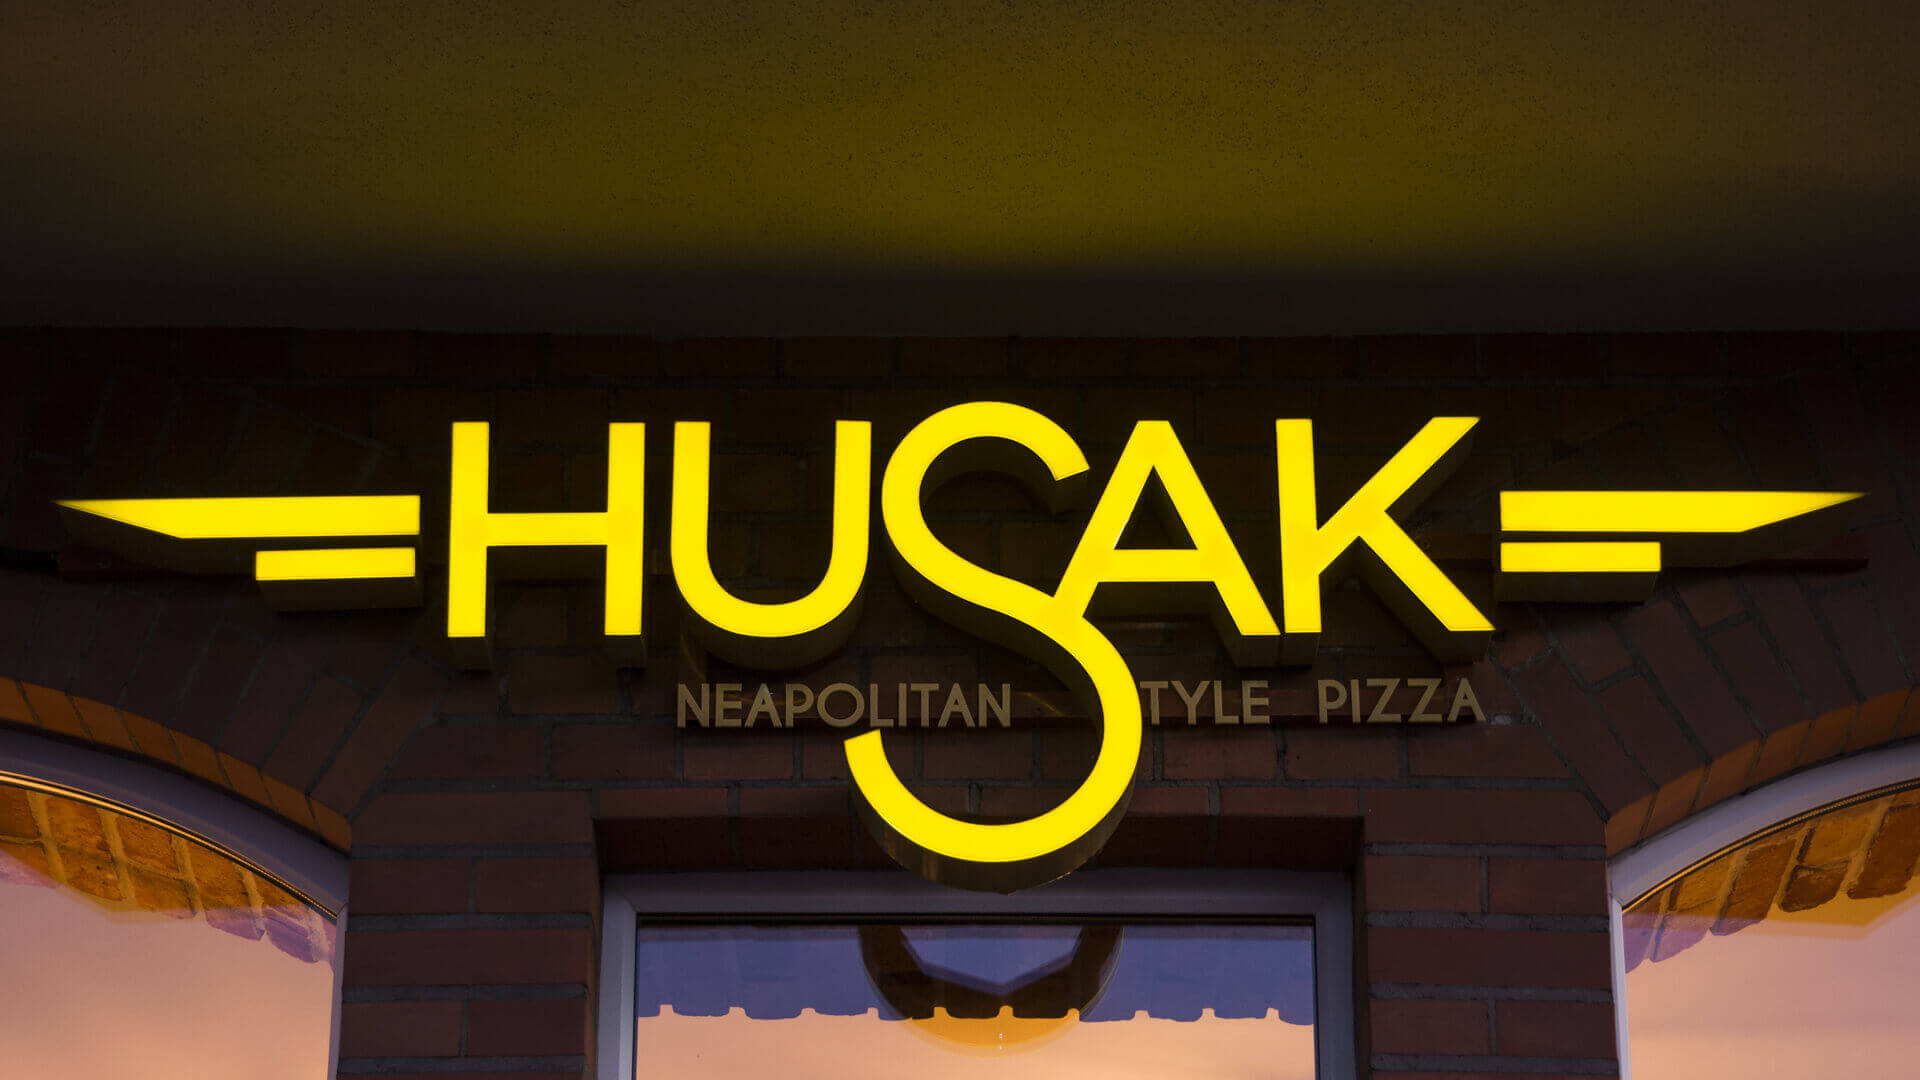 pizzería husak - hussak-pizzeria-zlote-literatura-espacial-iluminada-carteles-en-la-pared-con-cartucho-sobre-la-entrada-sobre-la-pared-señal-montada-en-la-pared-grunwaldzka-gdansk (14)